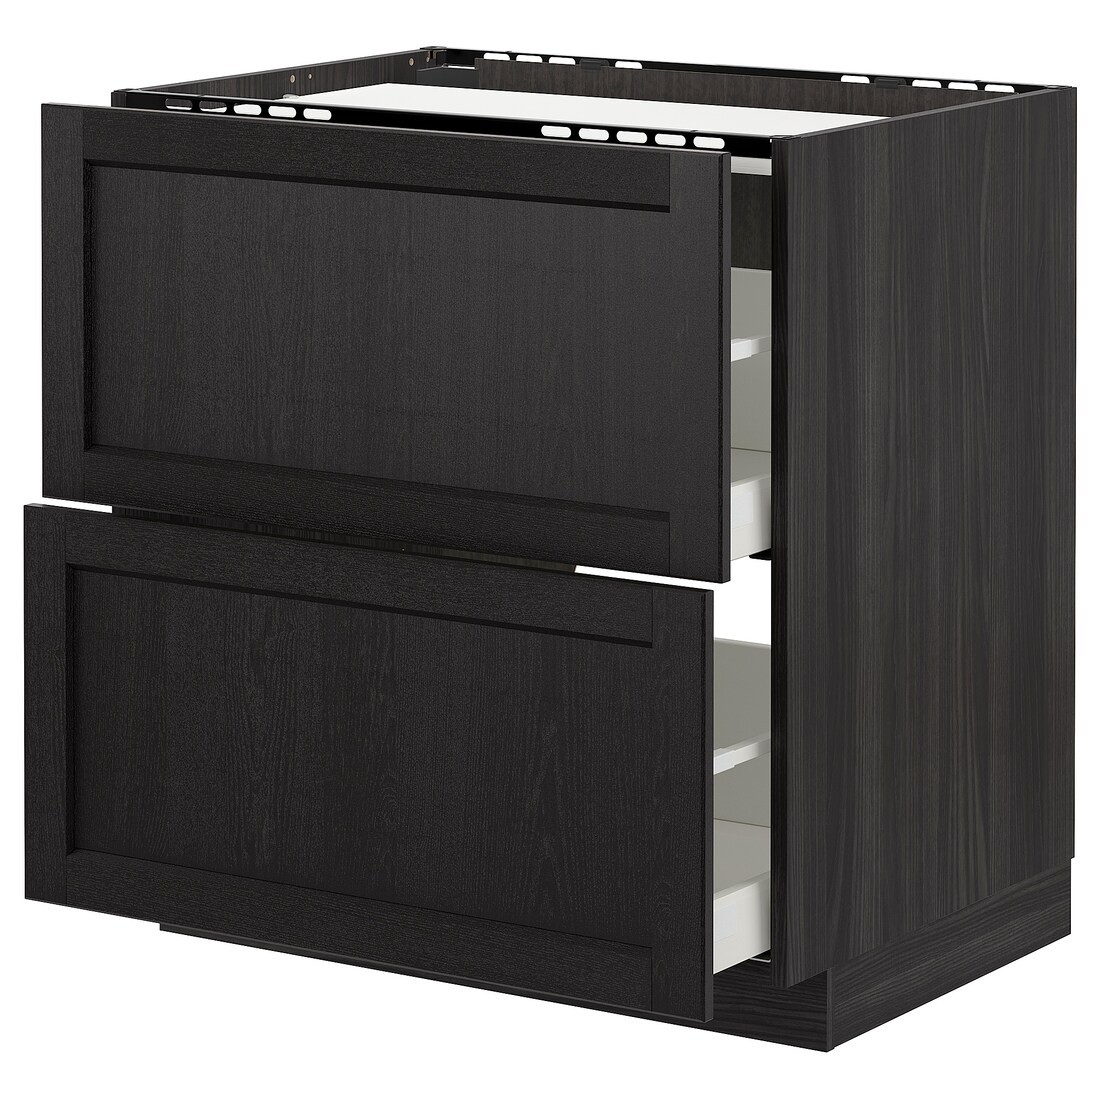 IKEA METOD МЕТОД / MAXIMERA МАКСИМЕРА Шкаф для варочной панели / 2 ящика, черный / Lerhyttan черная морилка, 80x60 см 09260121 092.601.21